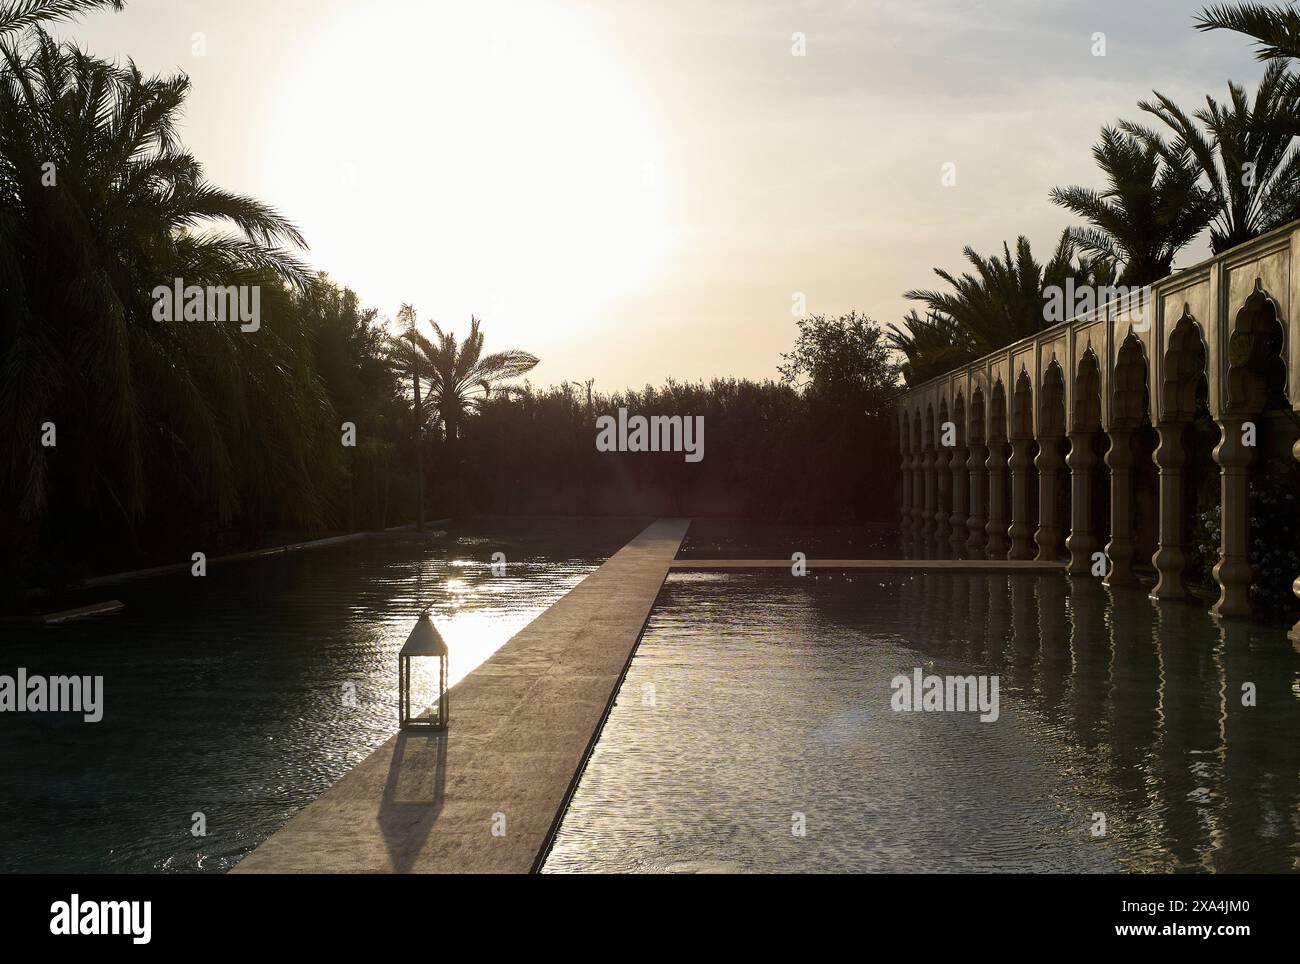 Das Bild zeigt einen ruhigen Swimmingpool in der Abenddämmerung, in dem das Sonnenlicht durch Palmen strömt und von der Wasseroberfläche reflektiert wird, neben einem kunstvollen Verzicht Stockfoto